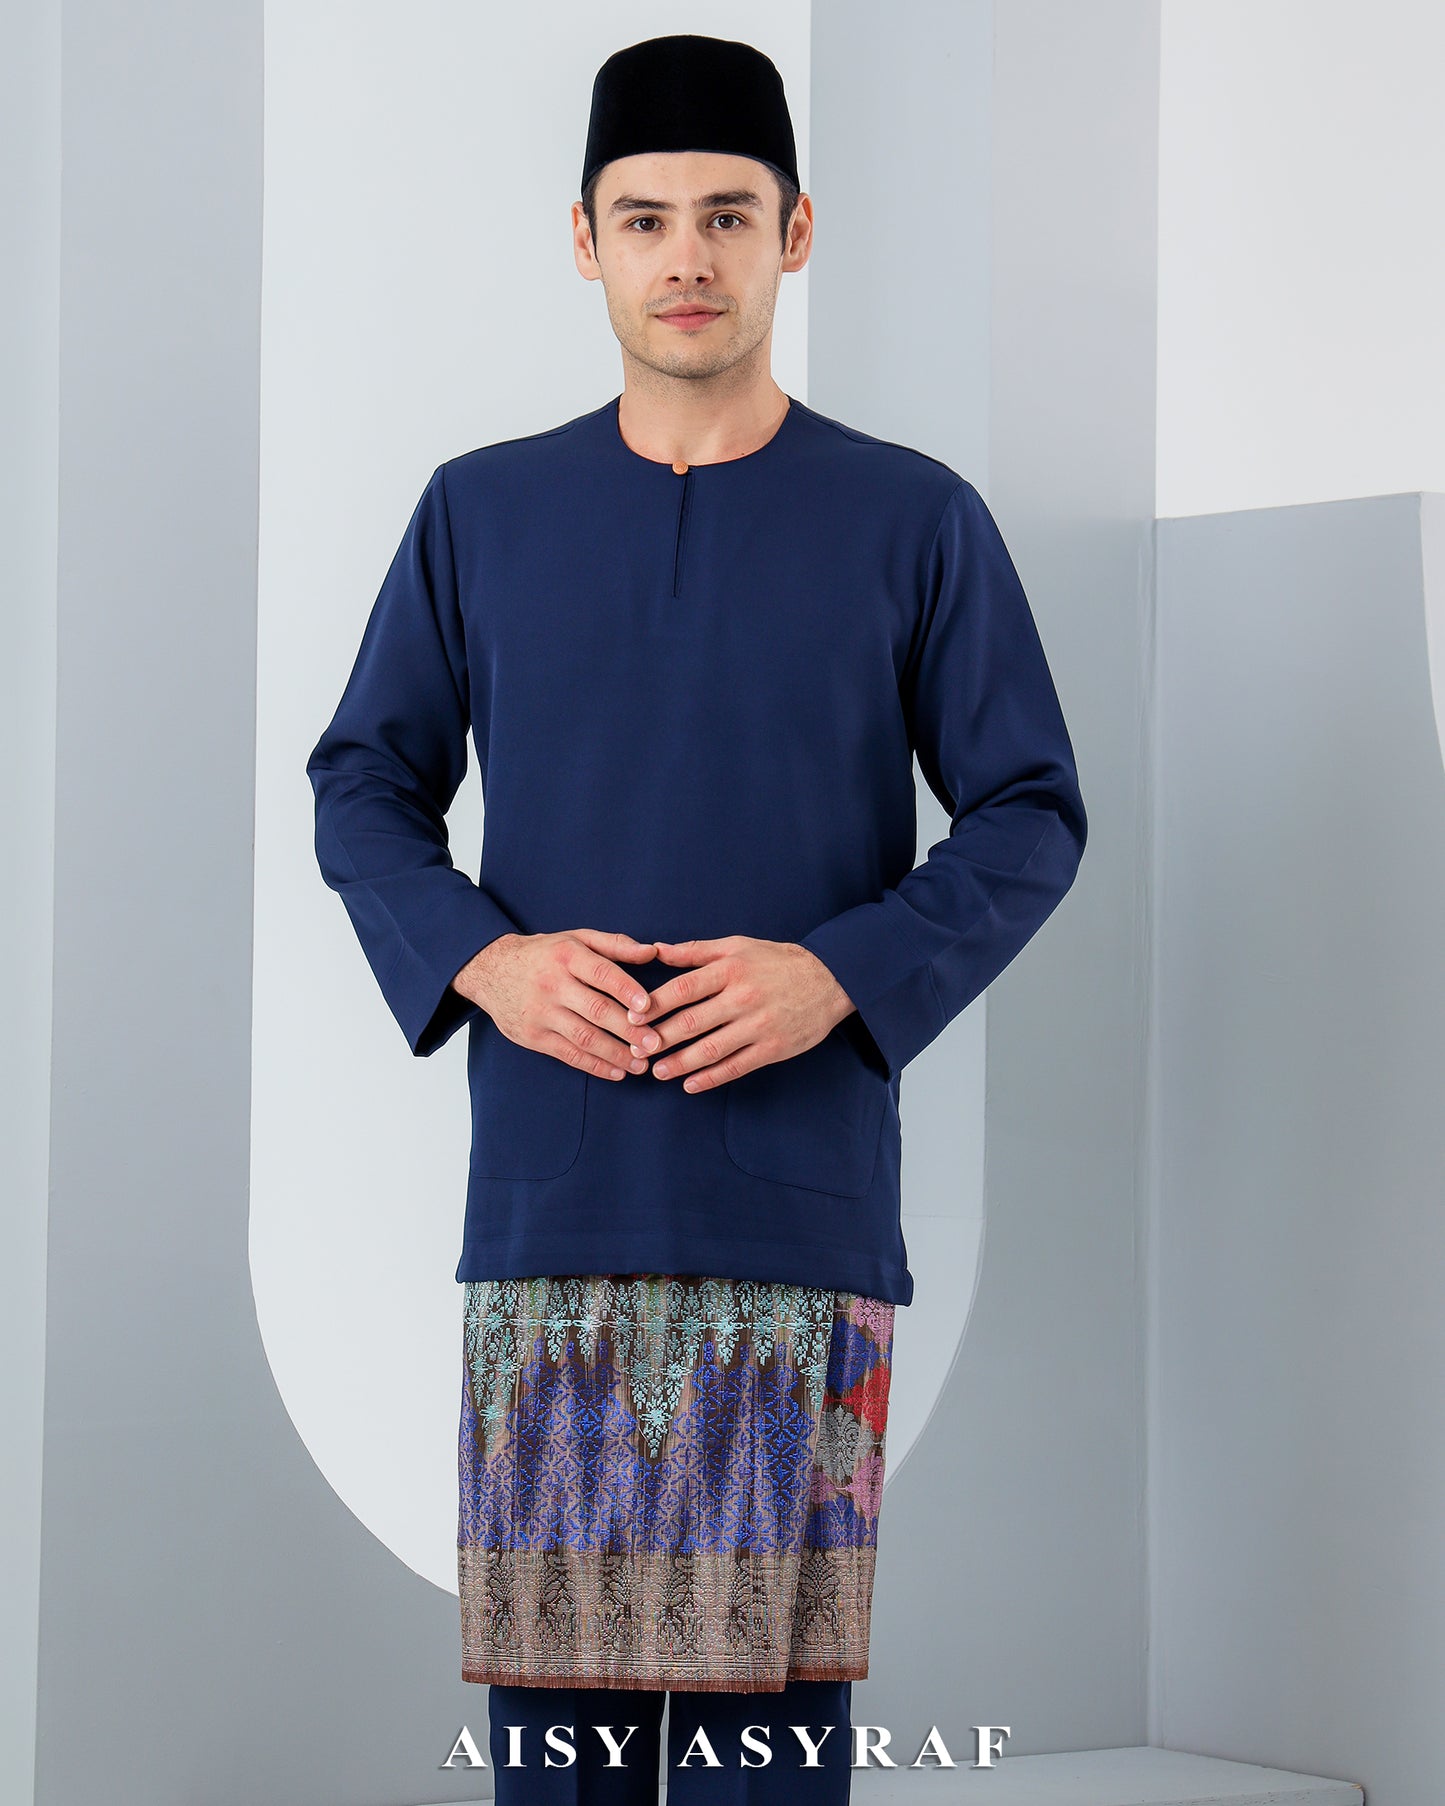 Baju Melayu Antalya - Navy Blue